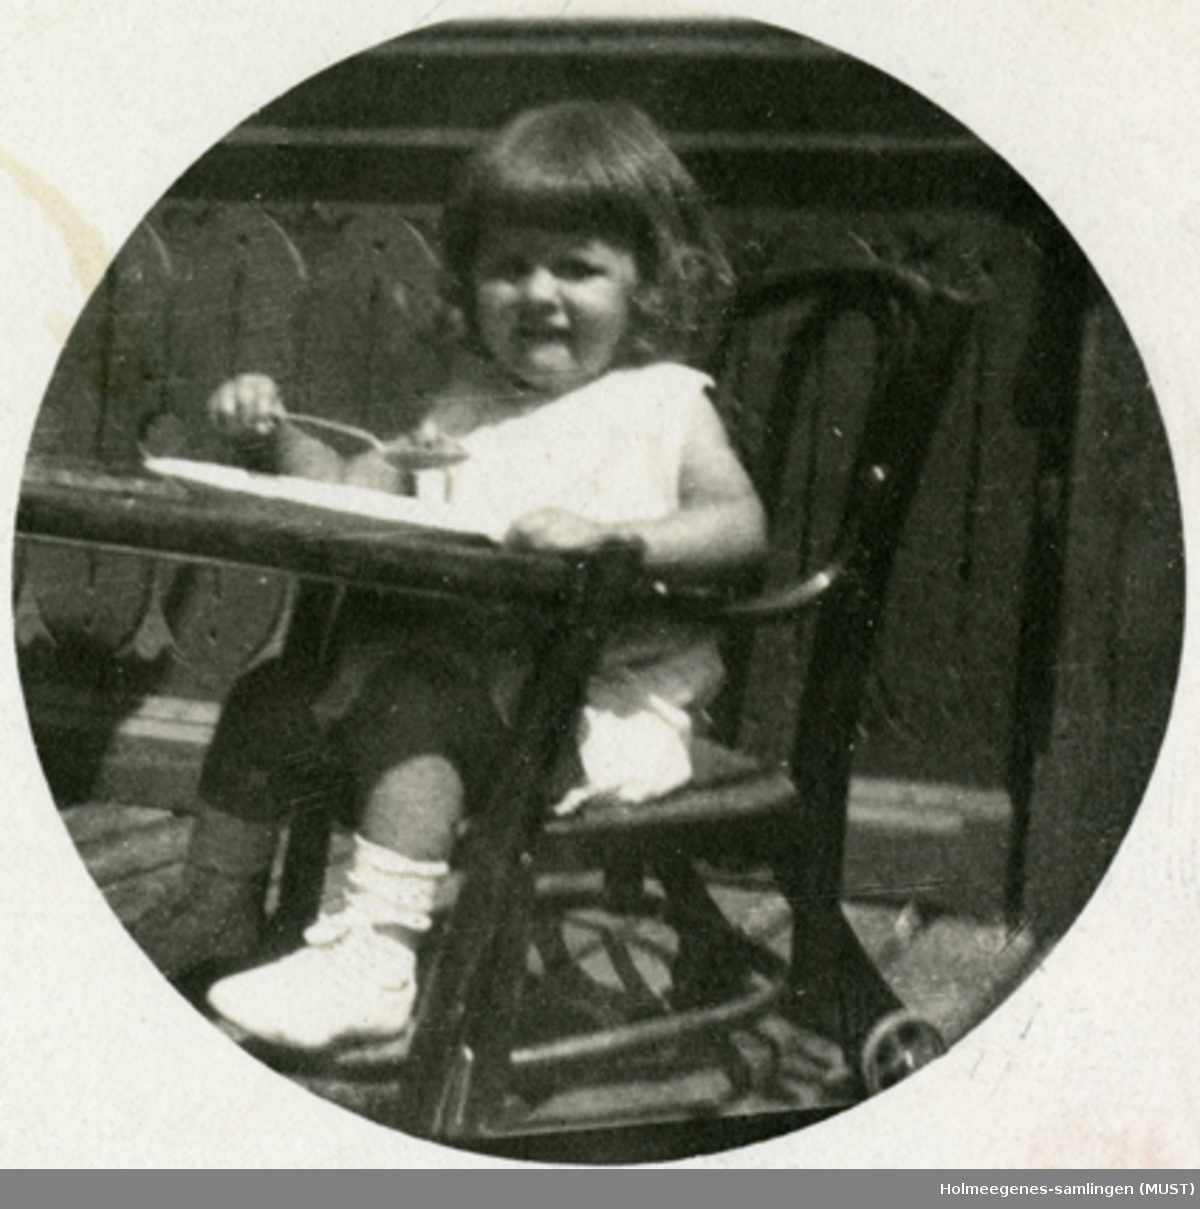 En liten jente i en barnestol, utendørs. Positiv kopiert på postkort-papir. Postkortet er påskrevet og poststemplet Wien august 1922. Jenta på bildet kalles her "Lillemor".